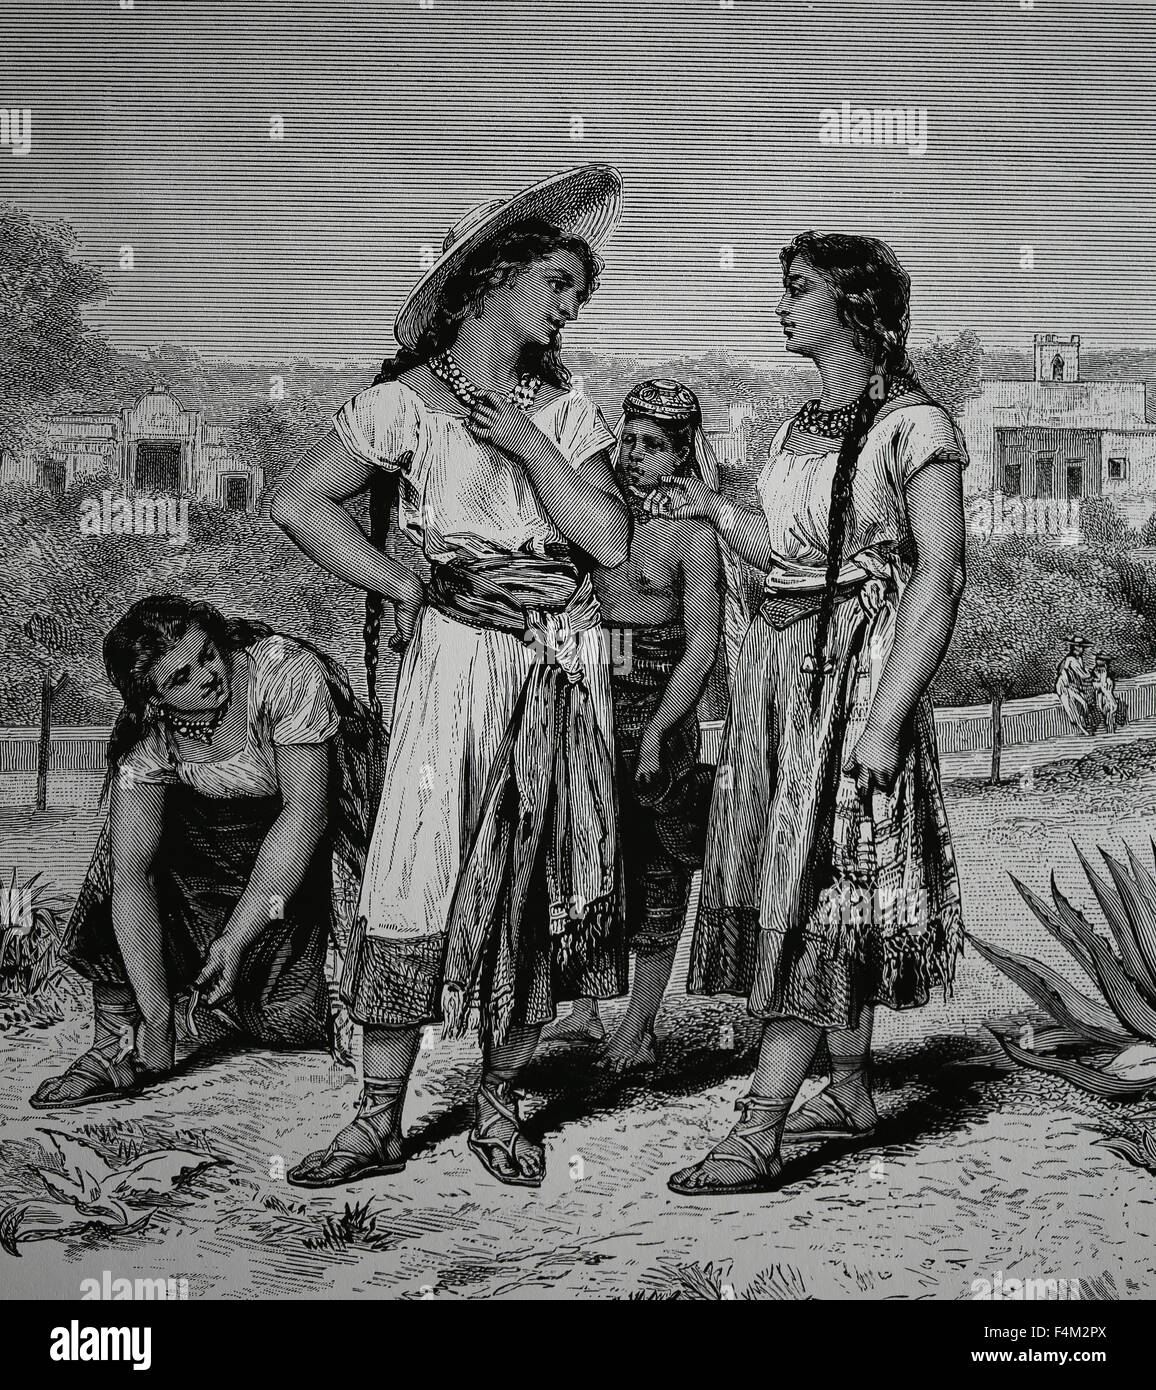 L'Amérique. Le Mexique. Chiapas. Les jeunes filles de Tuxtla, ch. 1875. Gravure, 19ème siècle. Banque D'Images